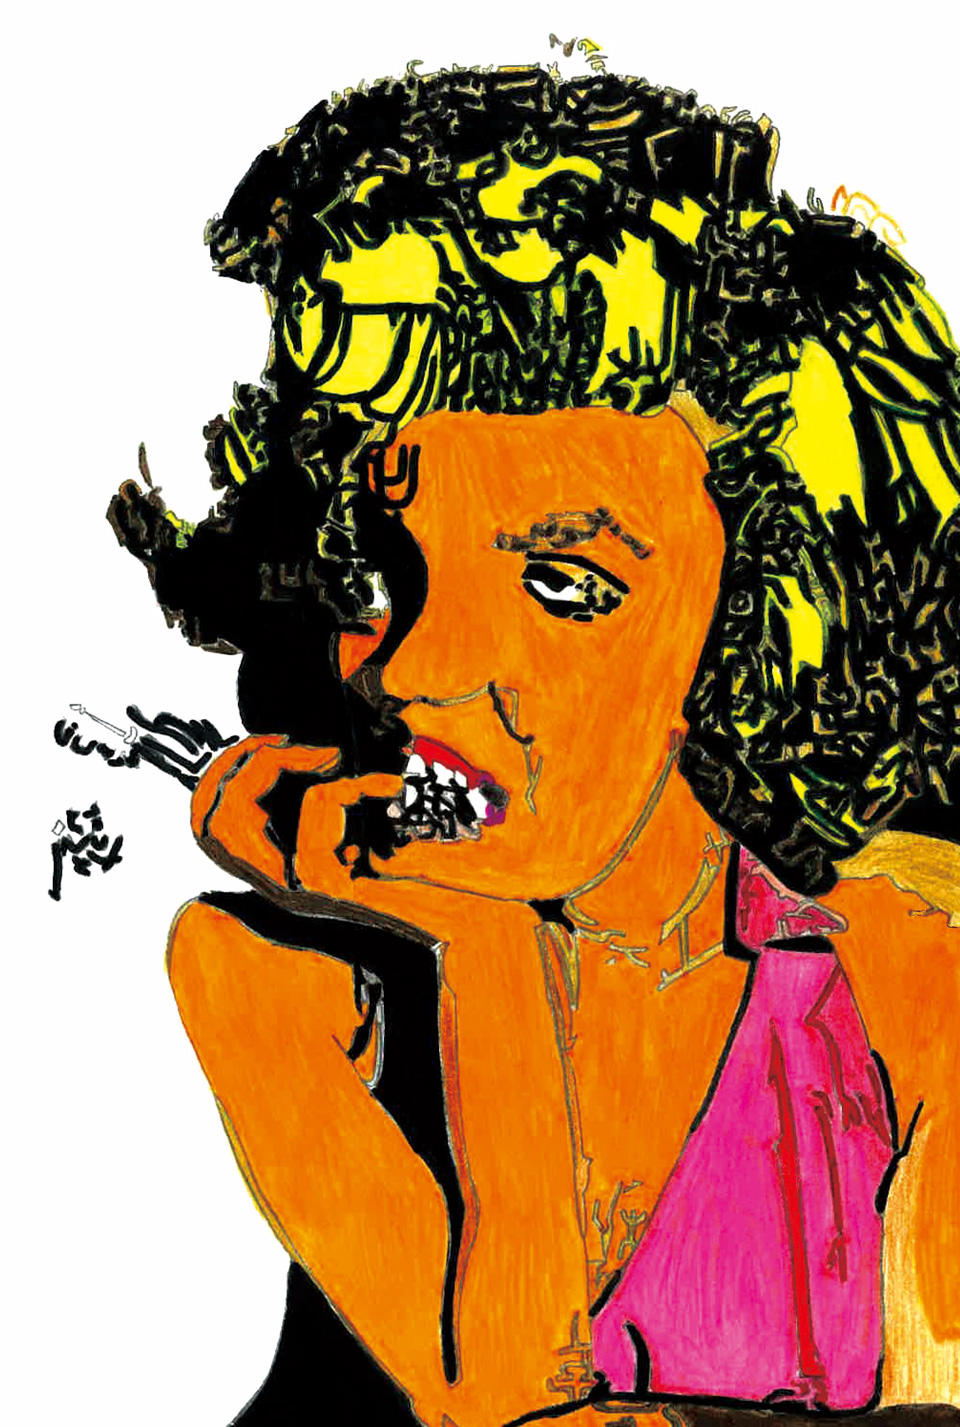 【絵】raitoさんによるマリリン・モンローを描いた作品。カラーペンで着色したもの